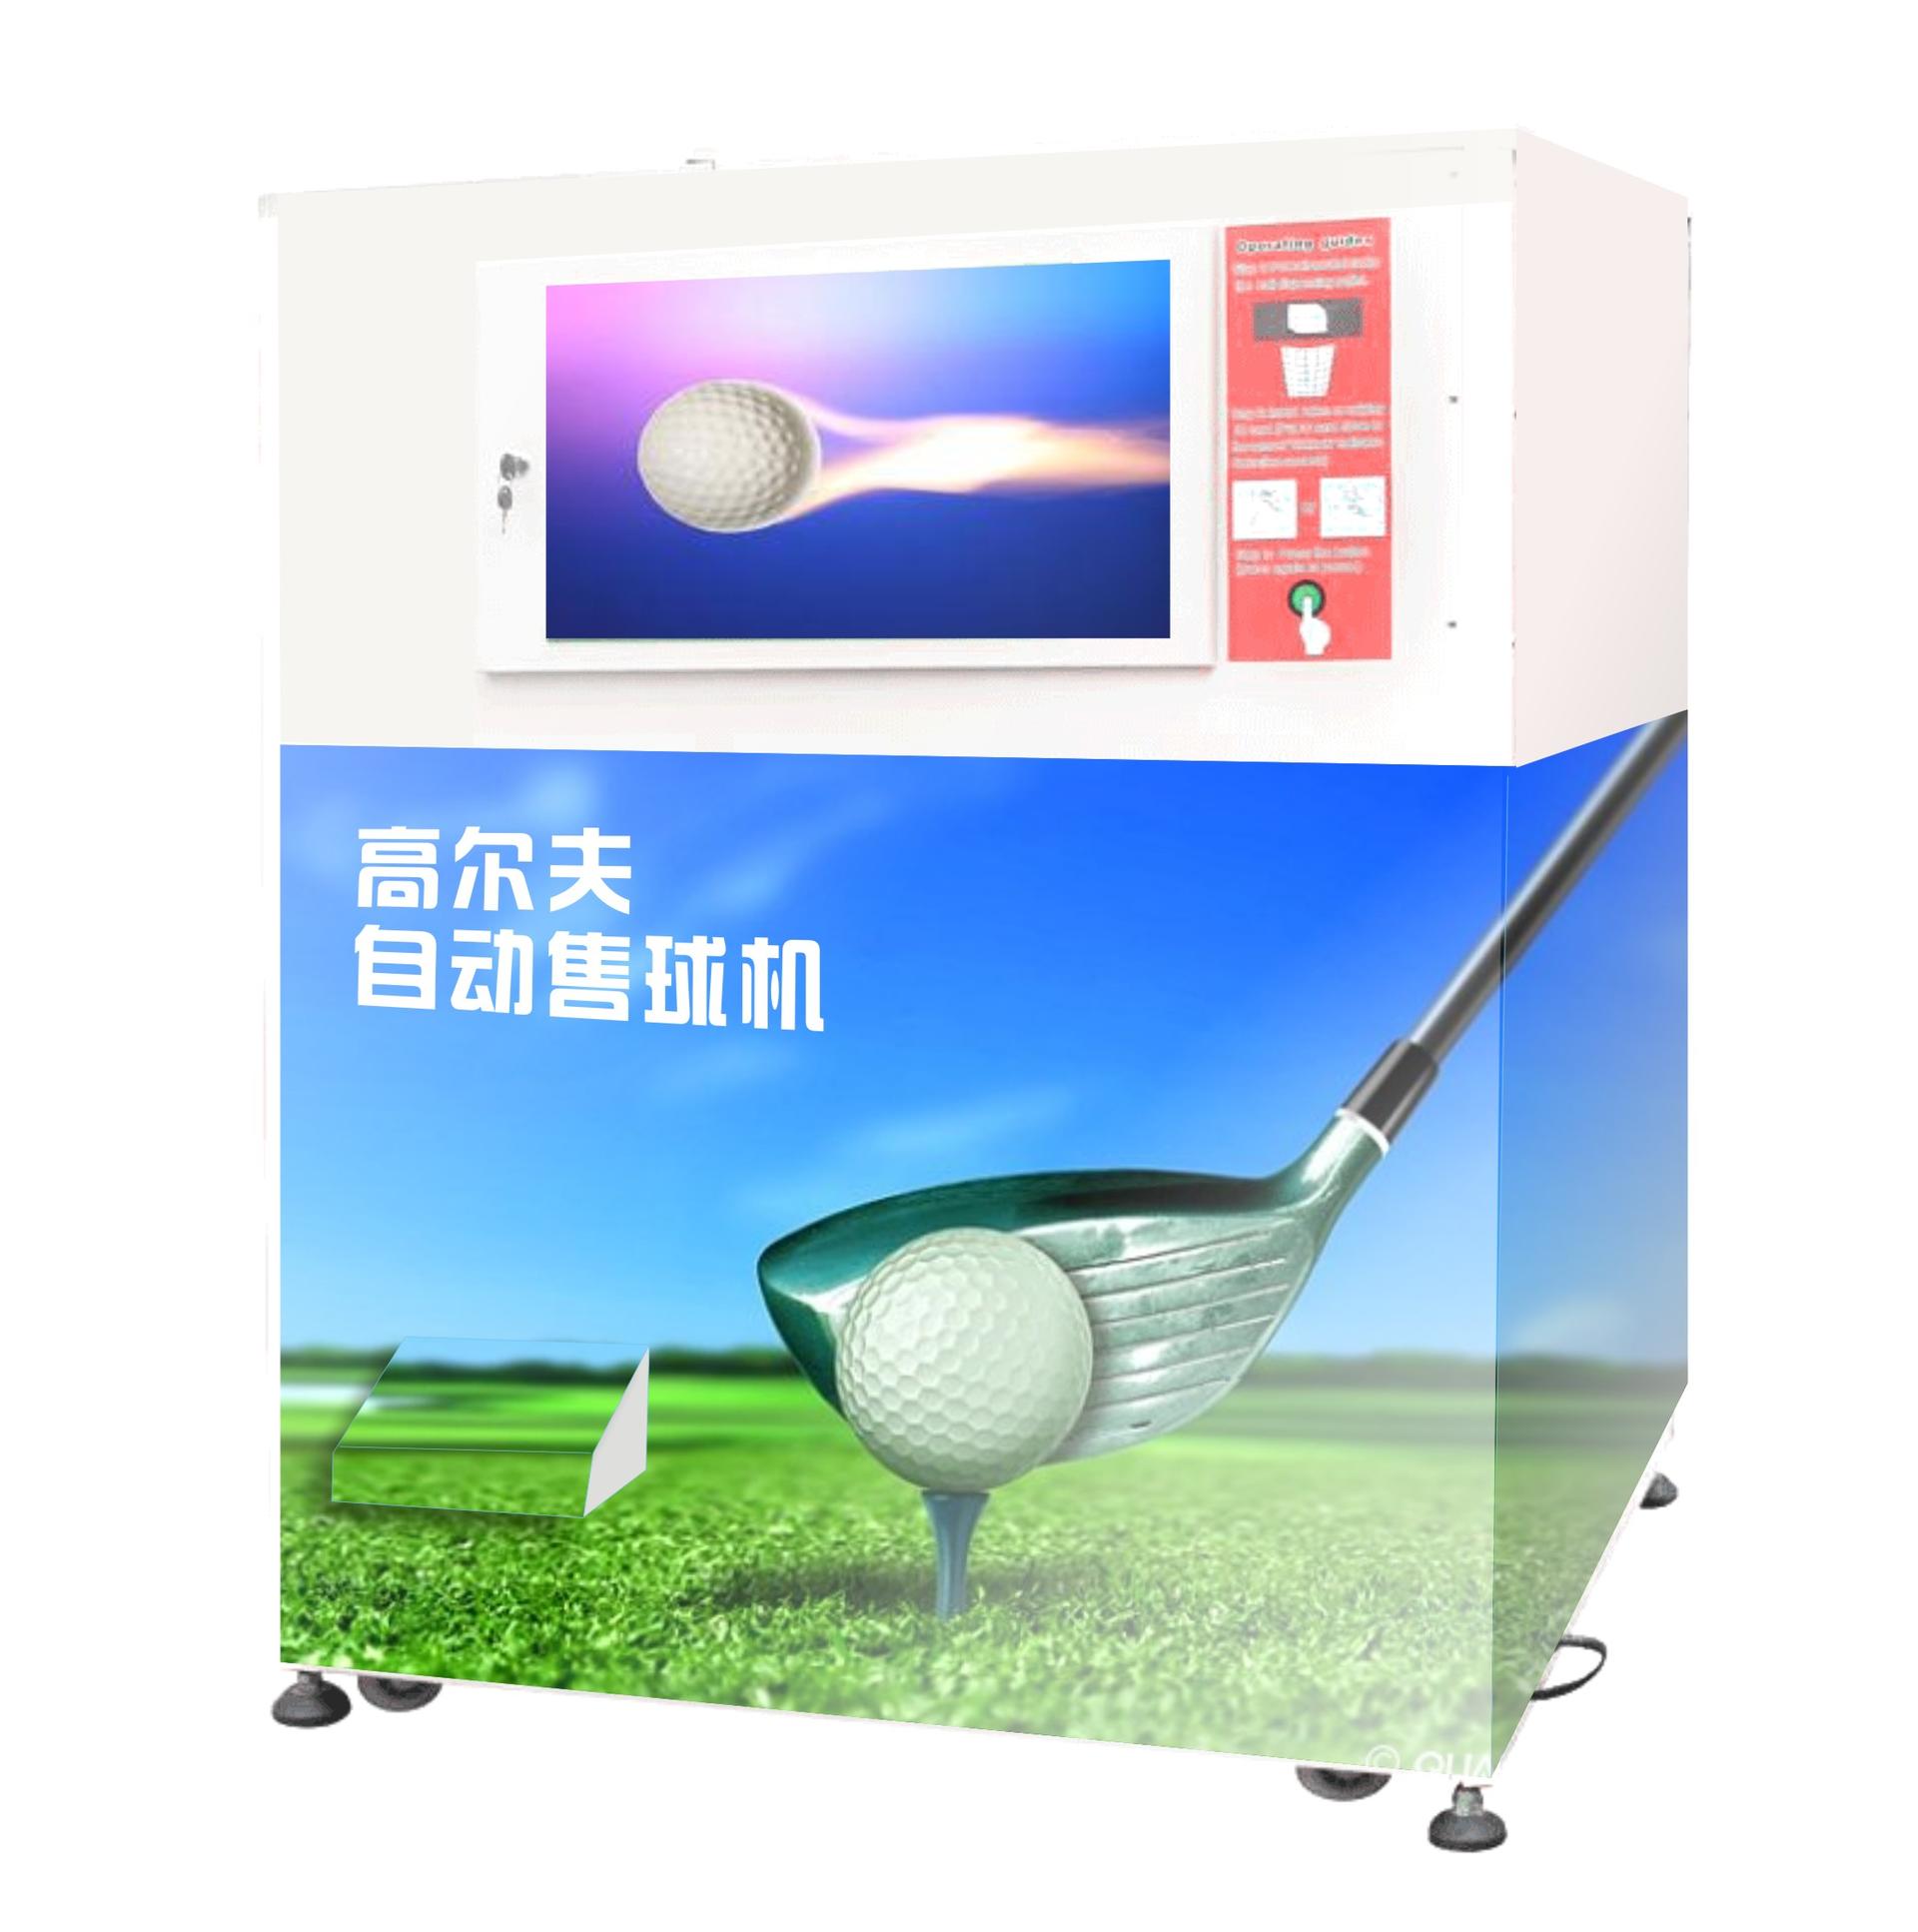 Commercial golf ball dispenser for golf driving range